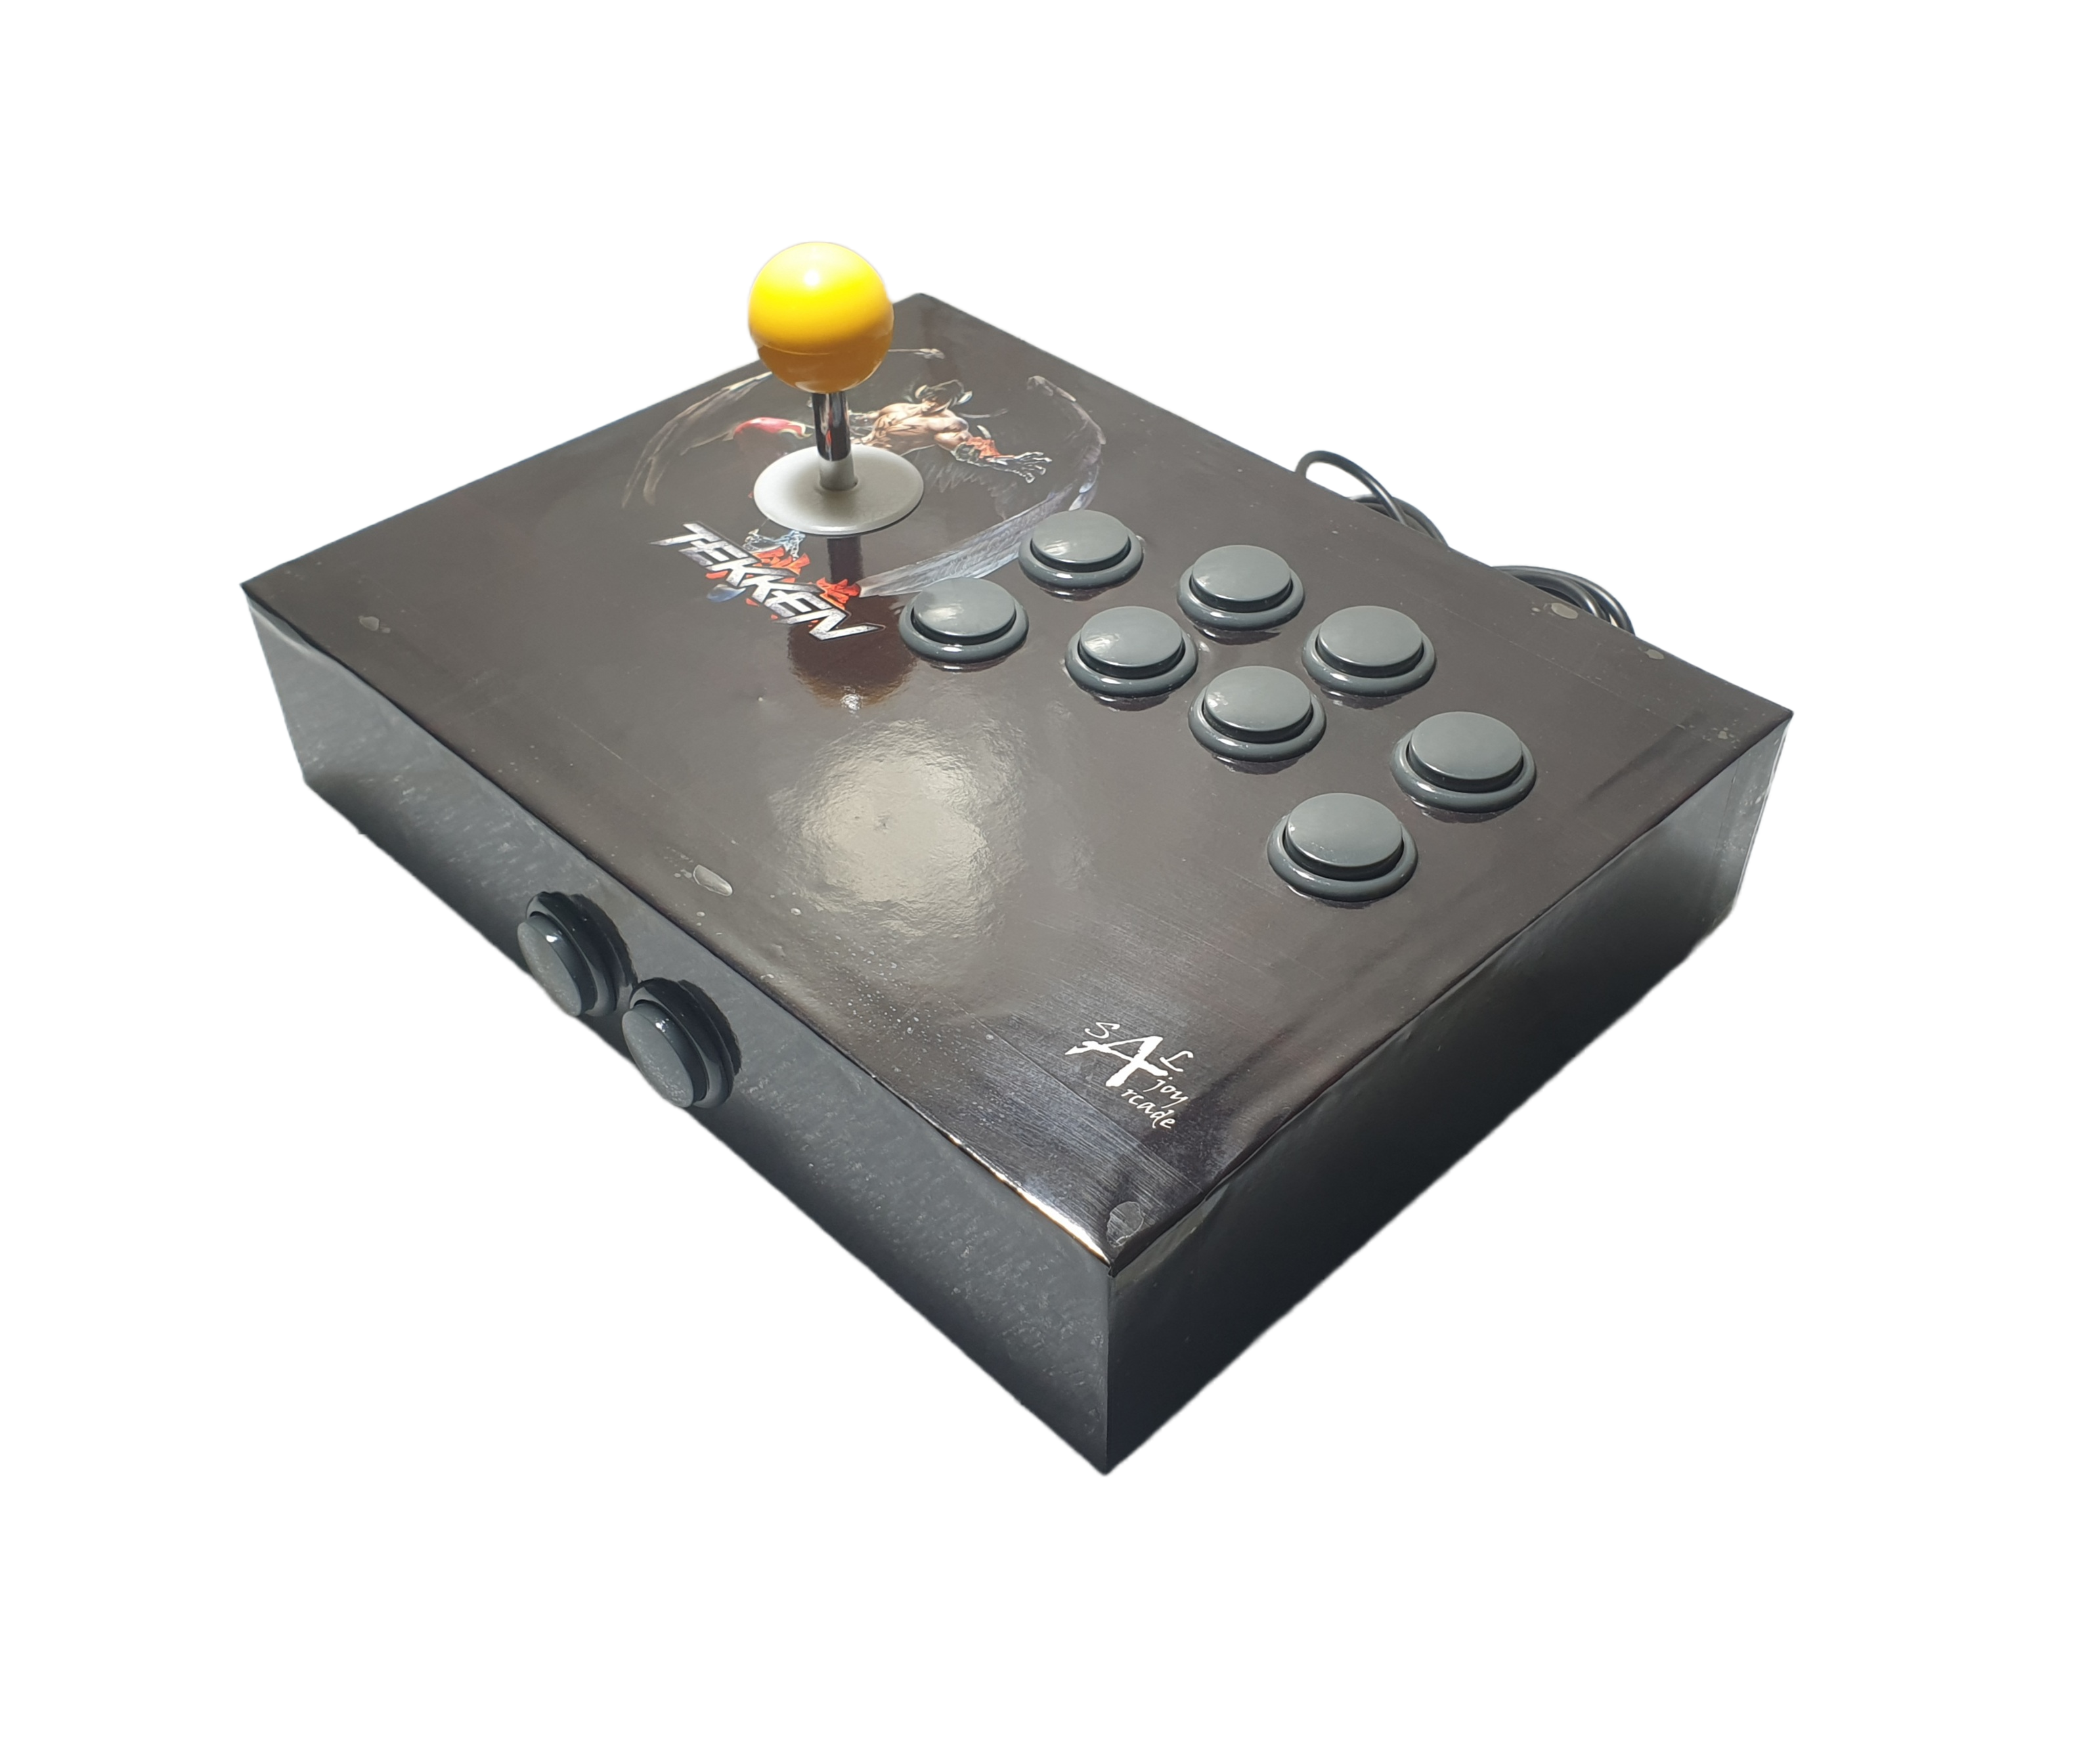 joyArcade SANWA COPY PS4 Usb Arcade joystick Gamepad for PS4, PS3, Windows and Android Mobiles [Model: YSTP4]